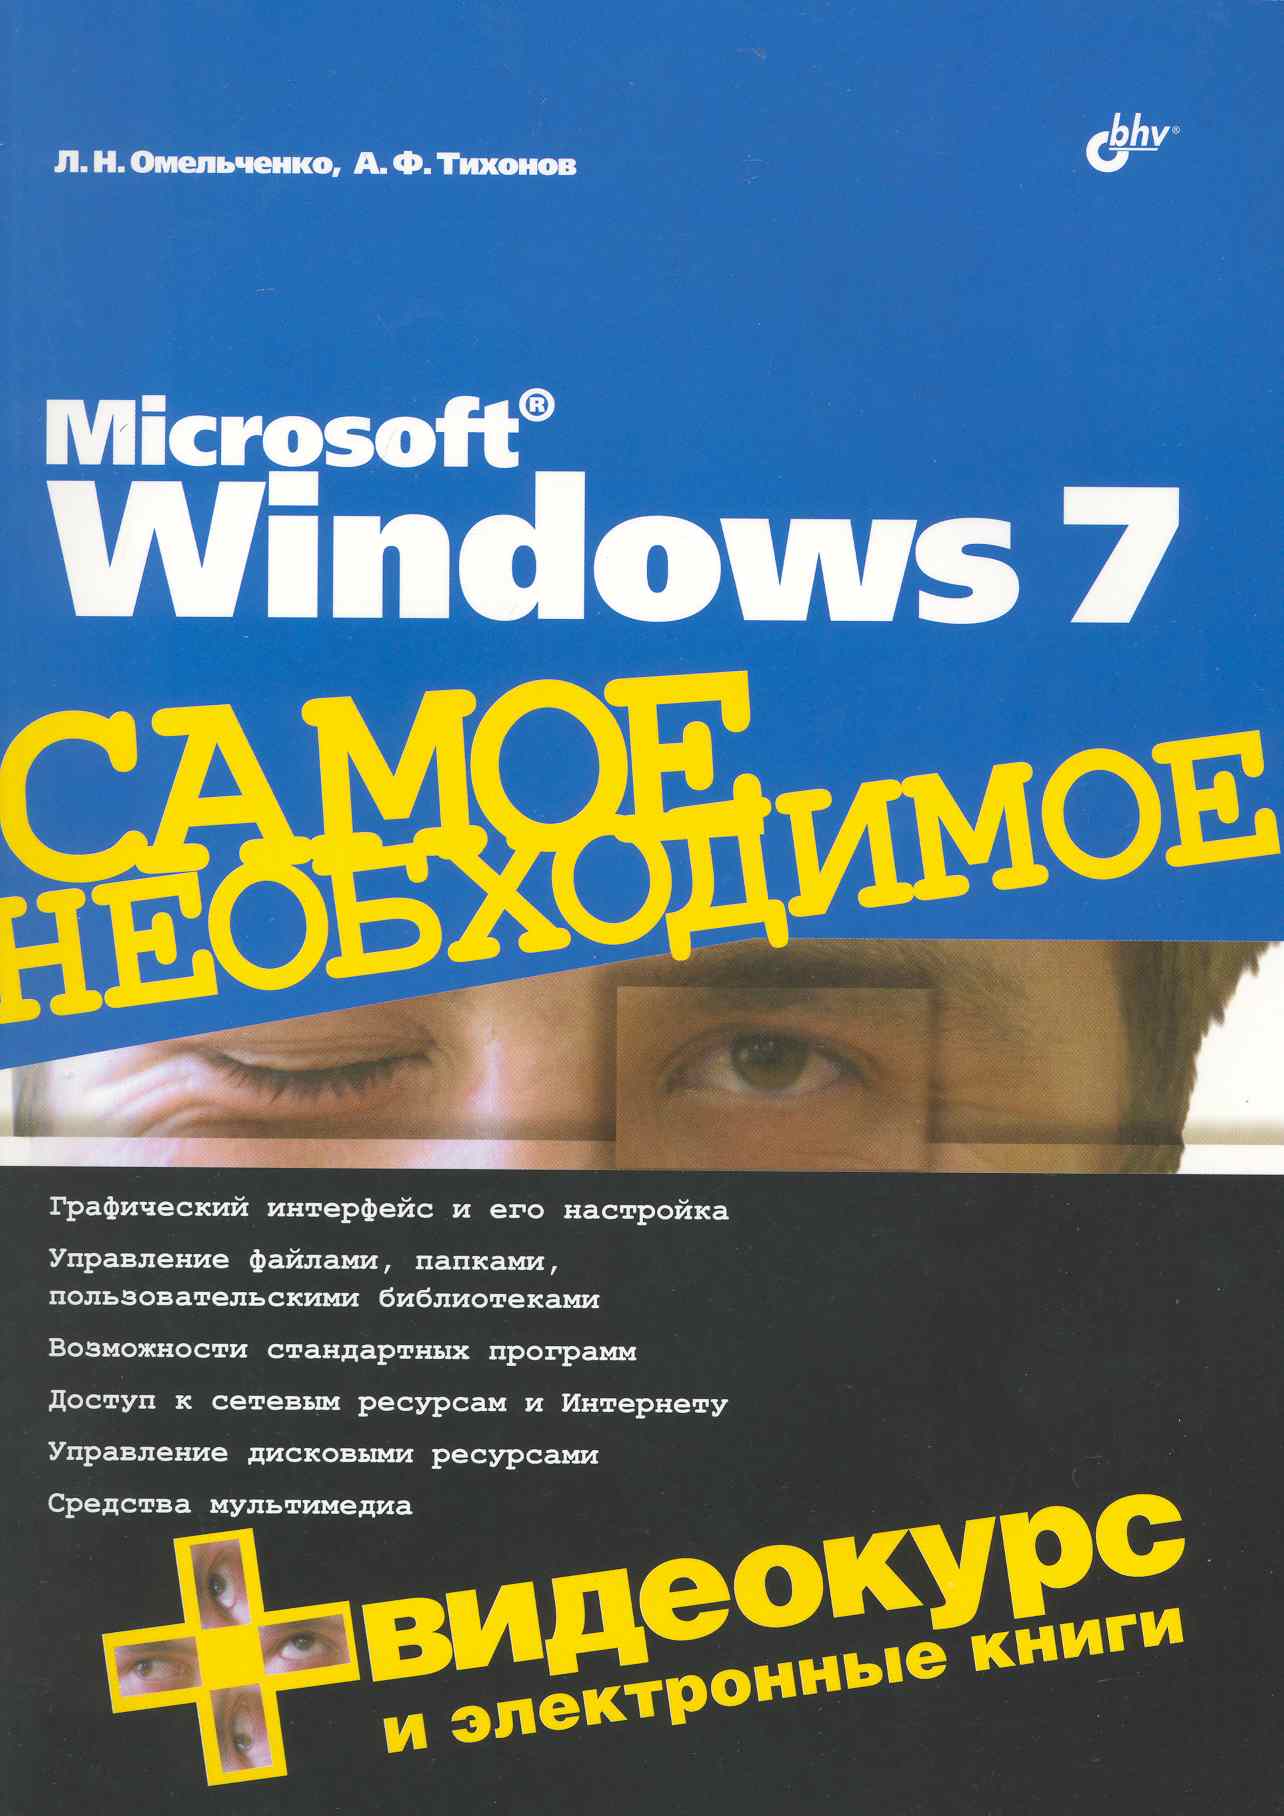 Microsoft Windows 7. Самое необходимое / +DVD омельченко людмила николаевна тихонов аркадий федорович microsoft windows 7 самое необходимое dvd